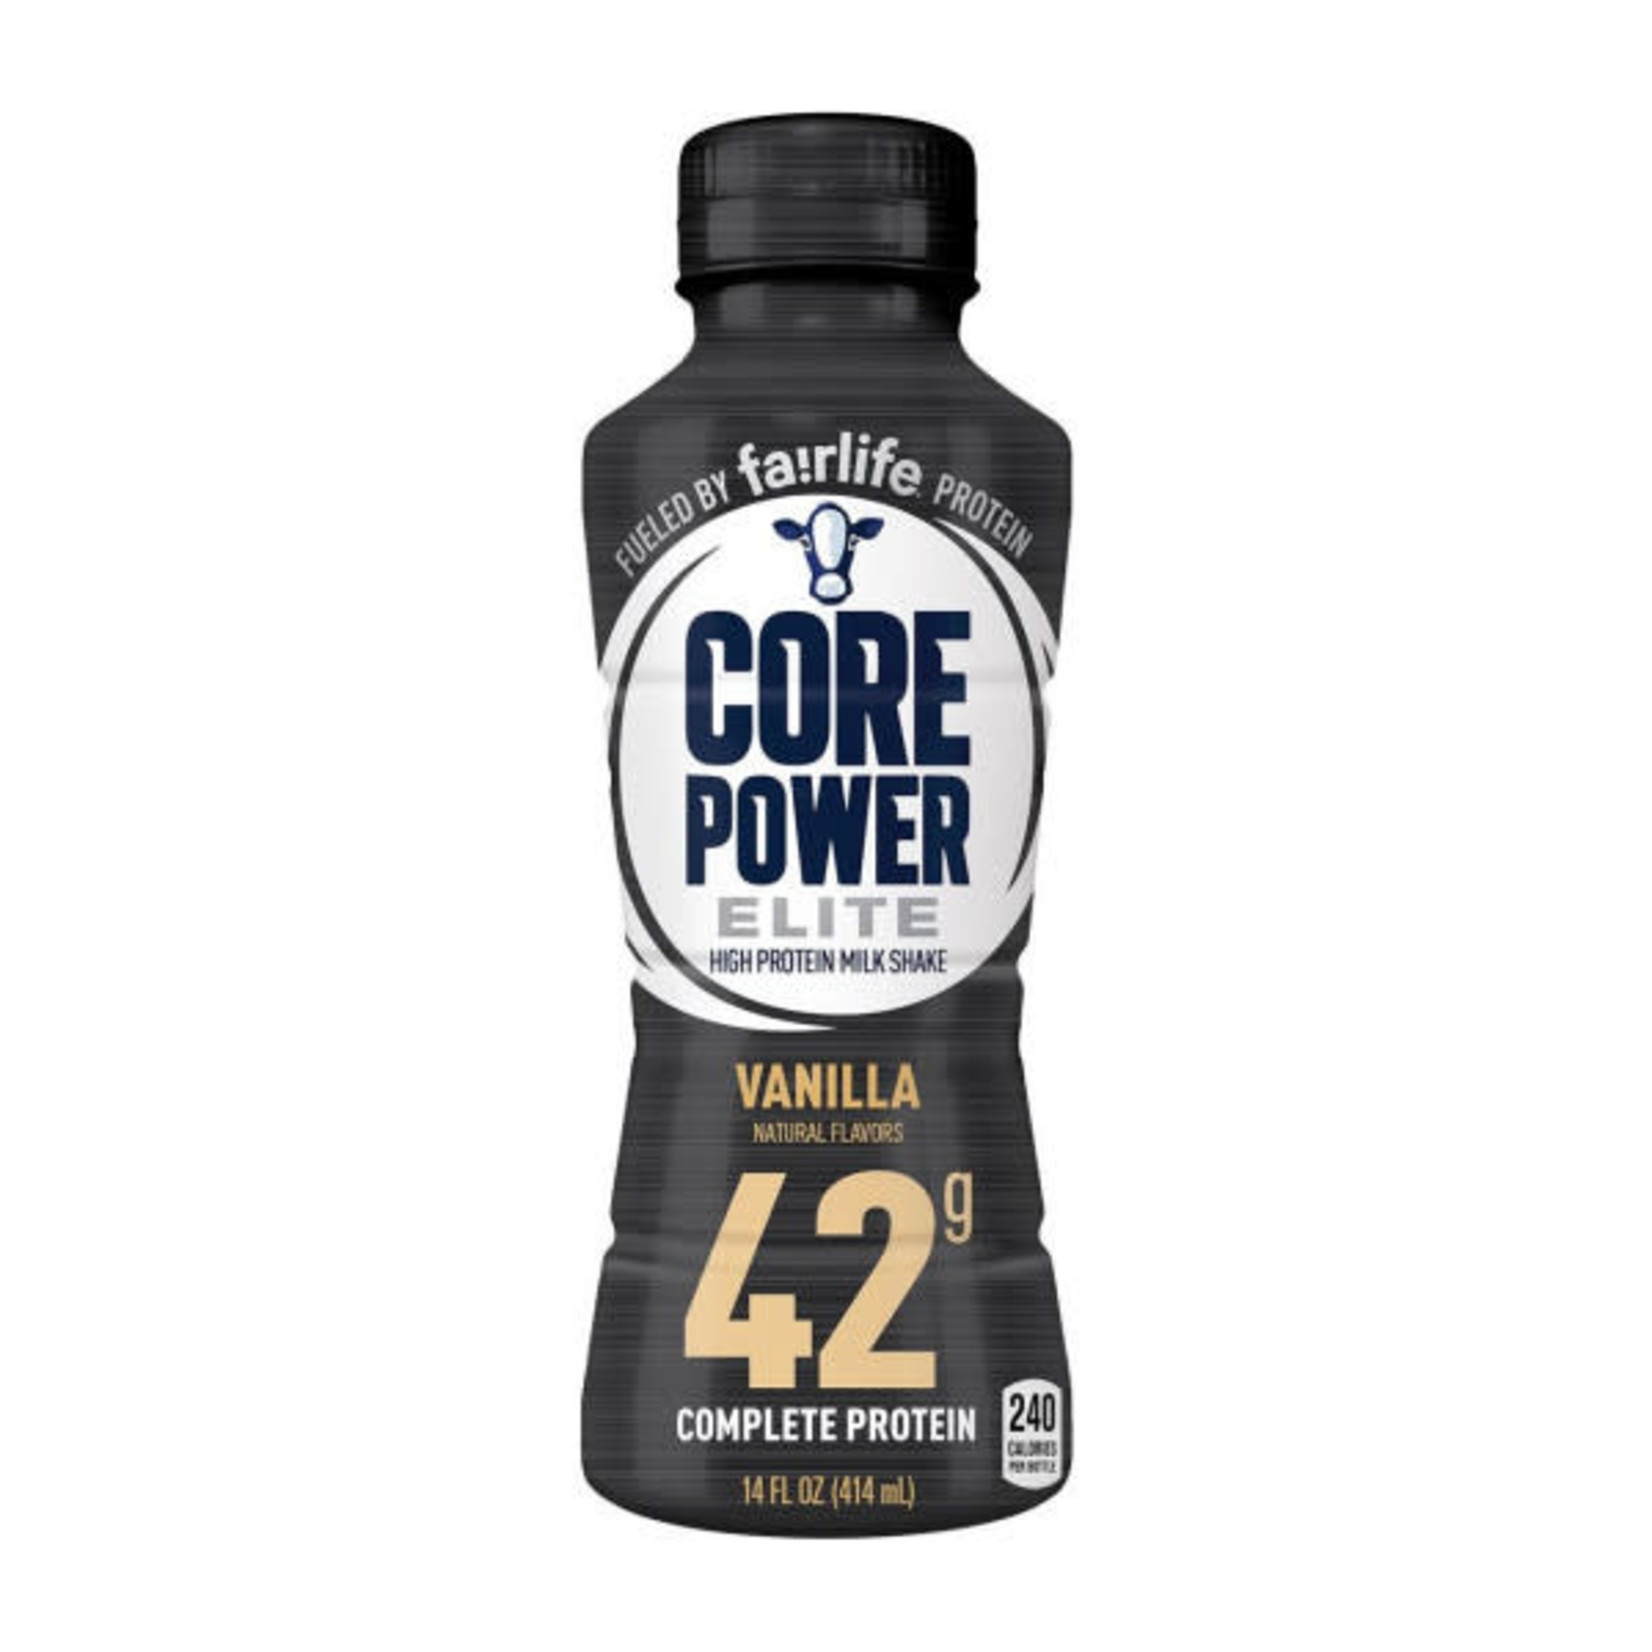 Core Power Elite Vanilla 42g